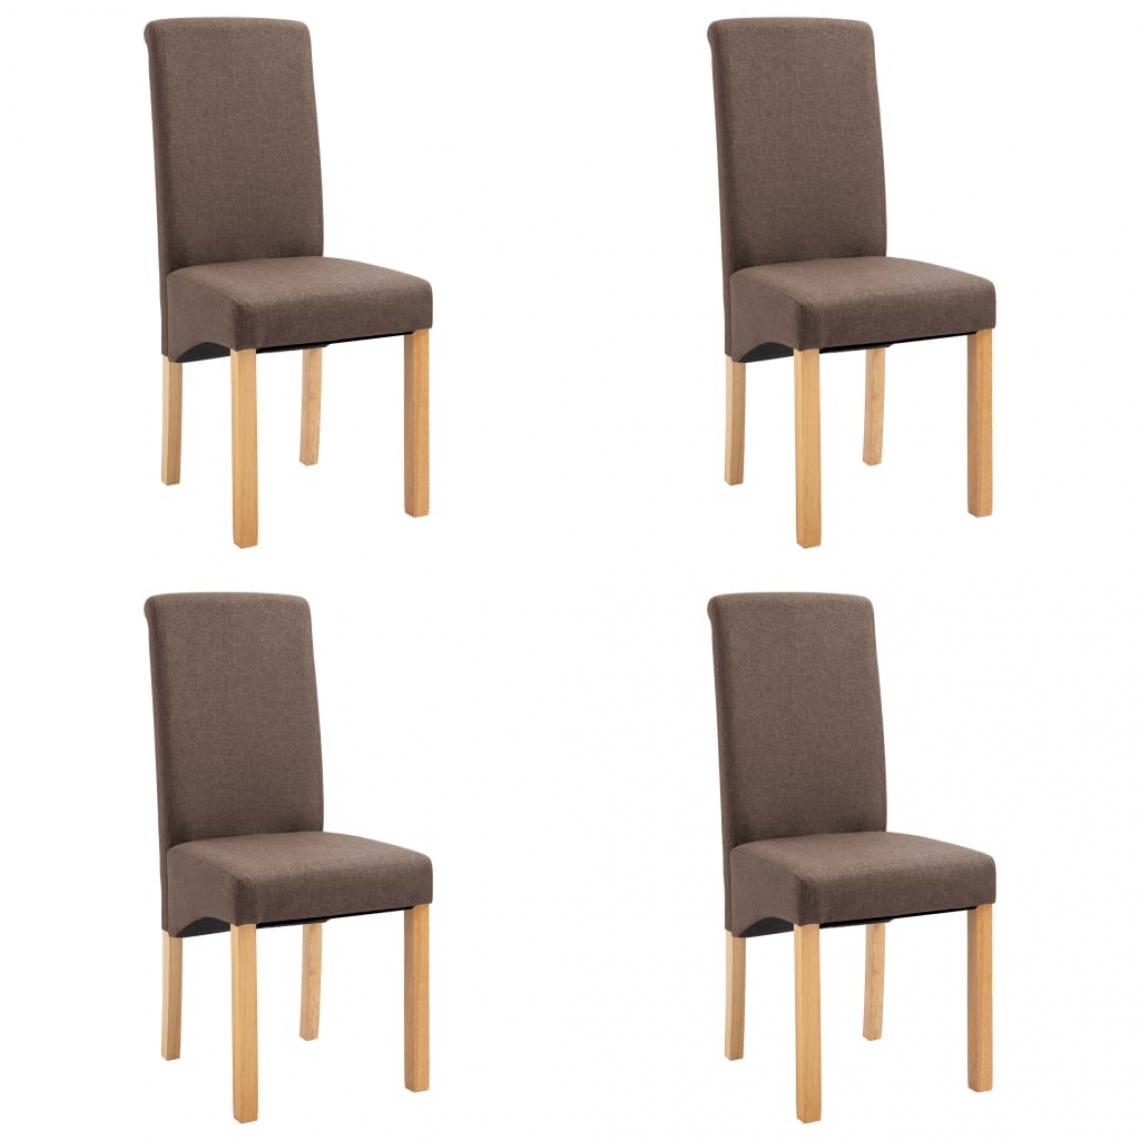 Decoshop26 - Lot de 4 chaises de salle à manger cuisine tissu marron CDS021740 - Chaises